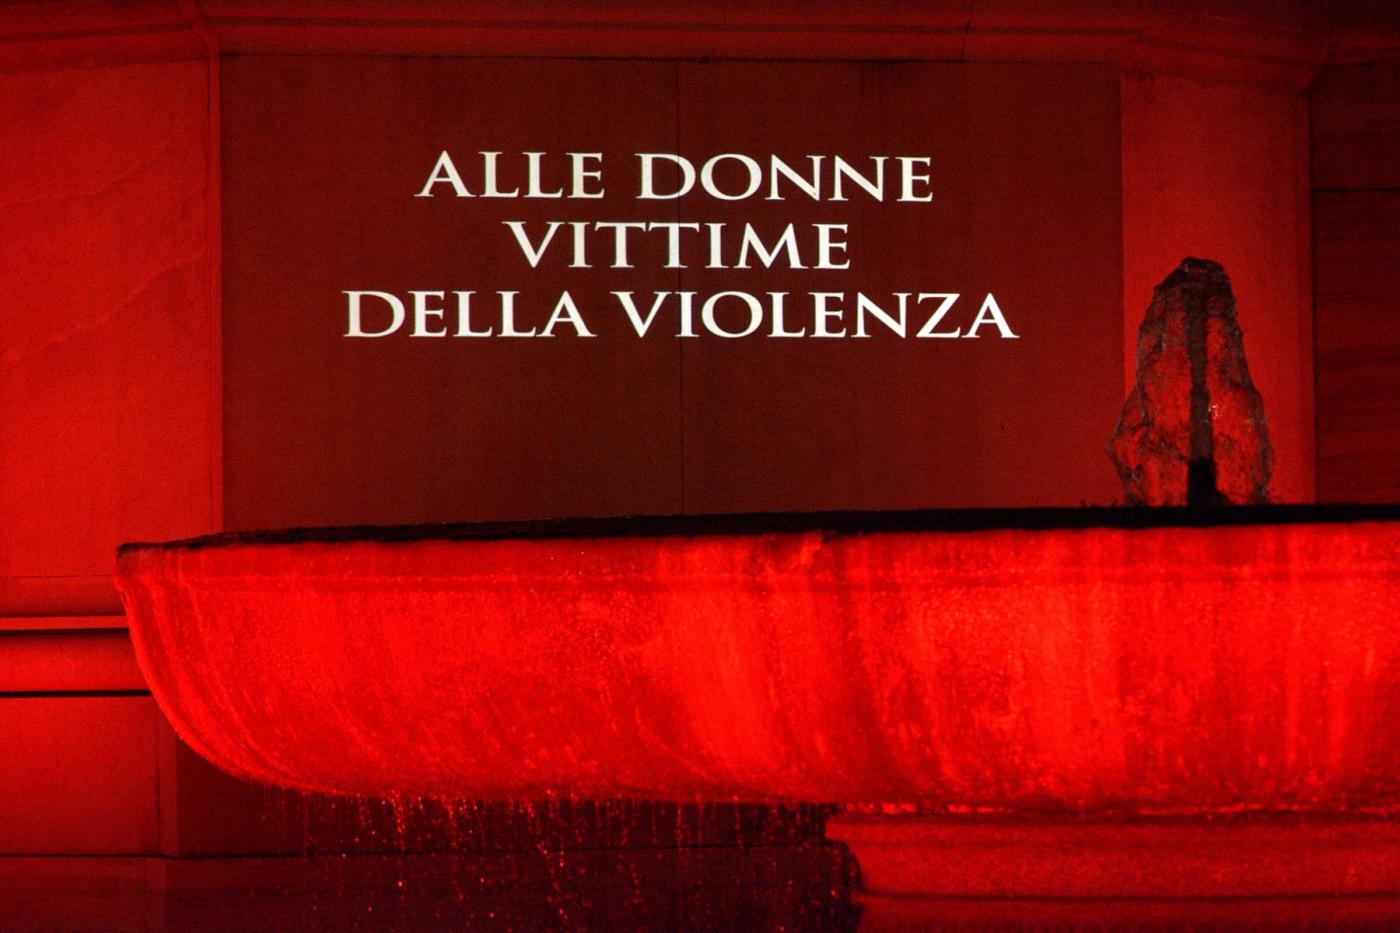 La fontana in piazza del Quirinale illuminata di rosso in memoria delle donne vittime della violenza